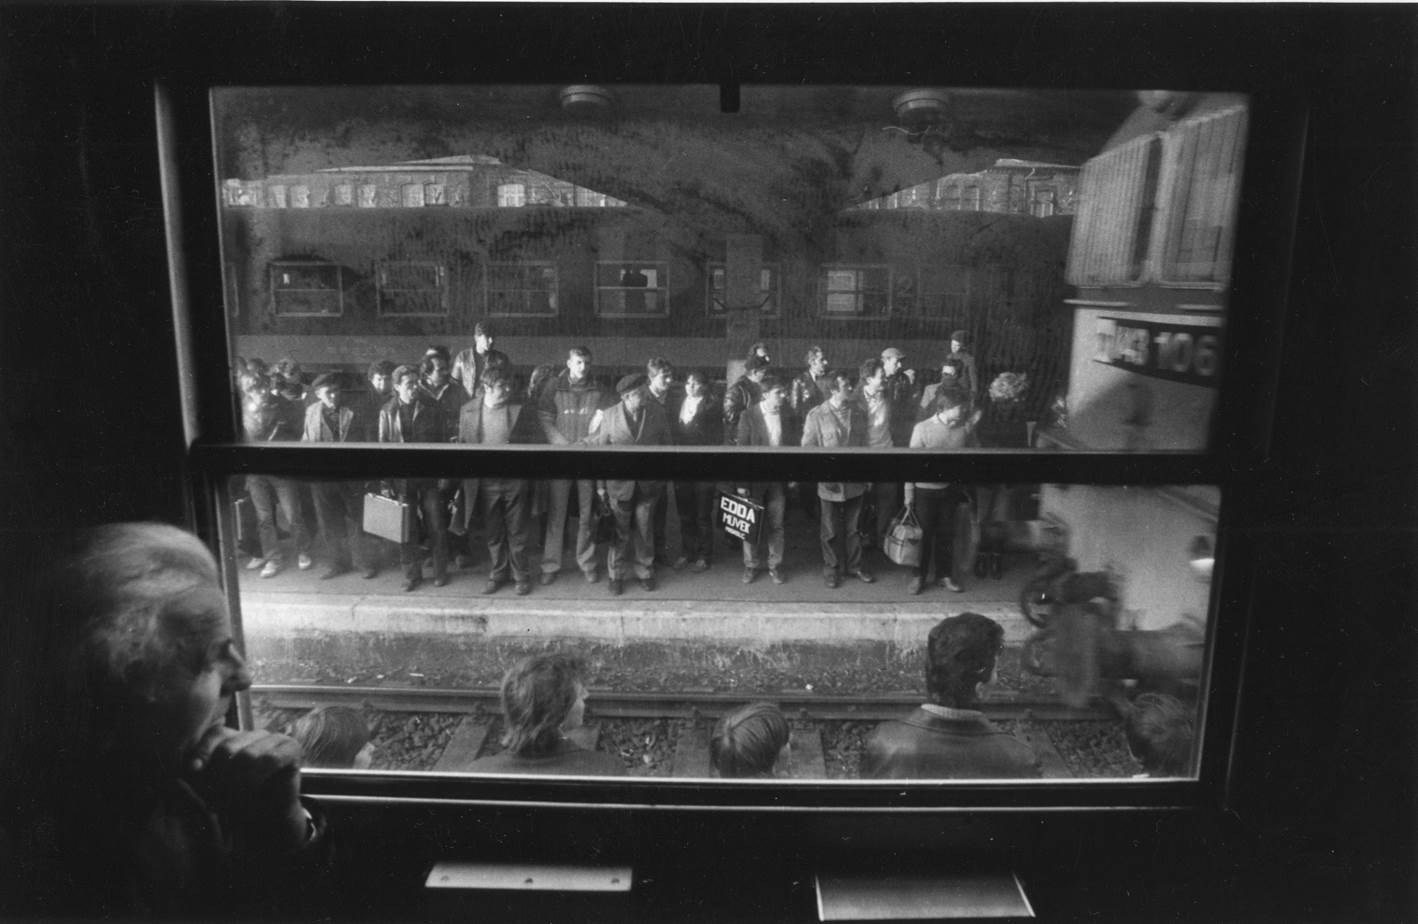 Bahnhof Miskolc: Menschen warten auf dem Bahnsteig auf die Einfahrt eines Arbeiterzuges. Links unten im Bild ist András Skarbit, die Hauptfigur der zwischen 1978 und 1988 erstellten Fotoreihe, zu sehen.